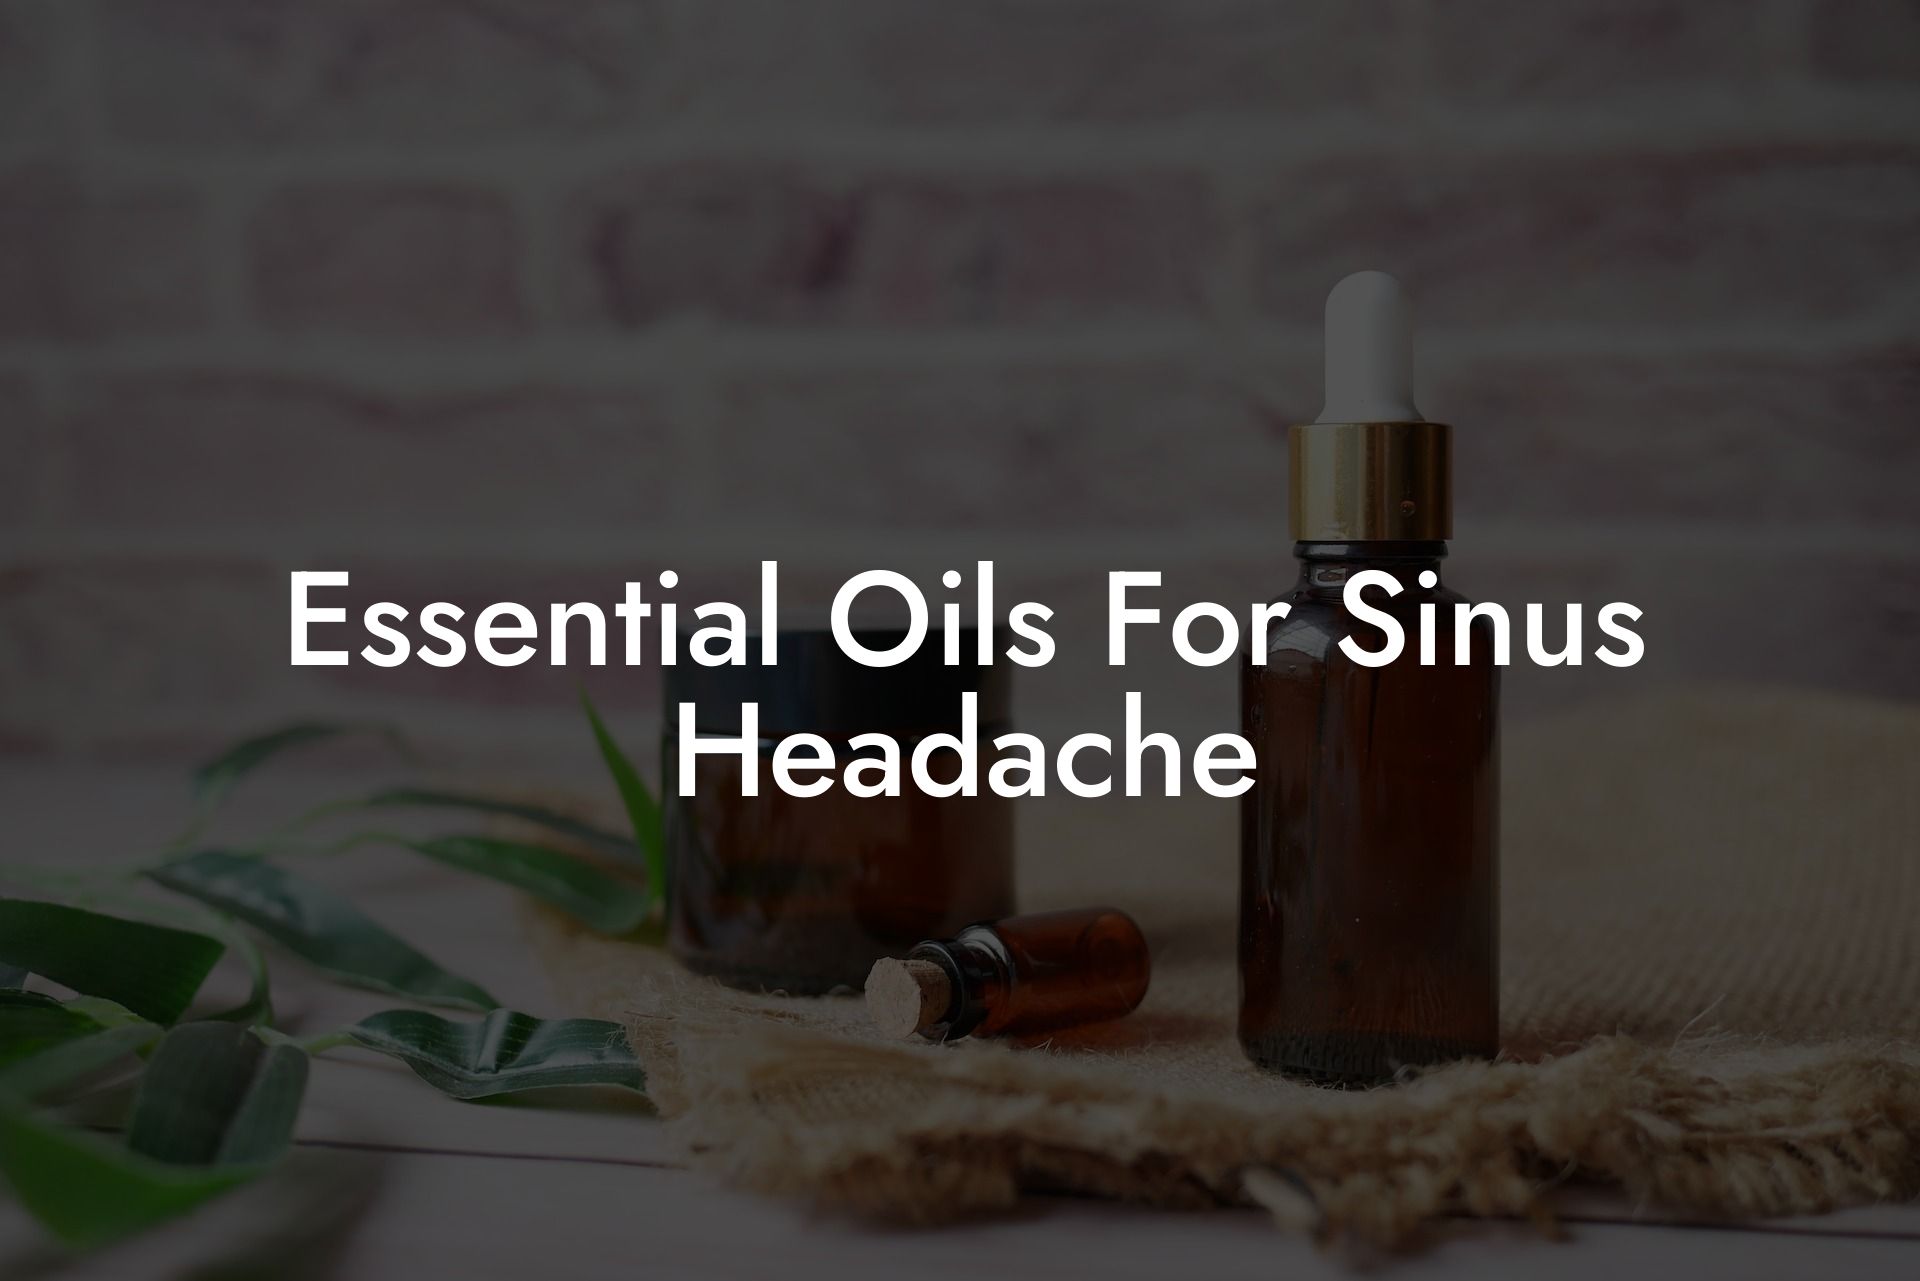 Essential Oils For Sinus Headache